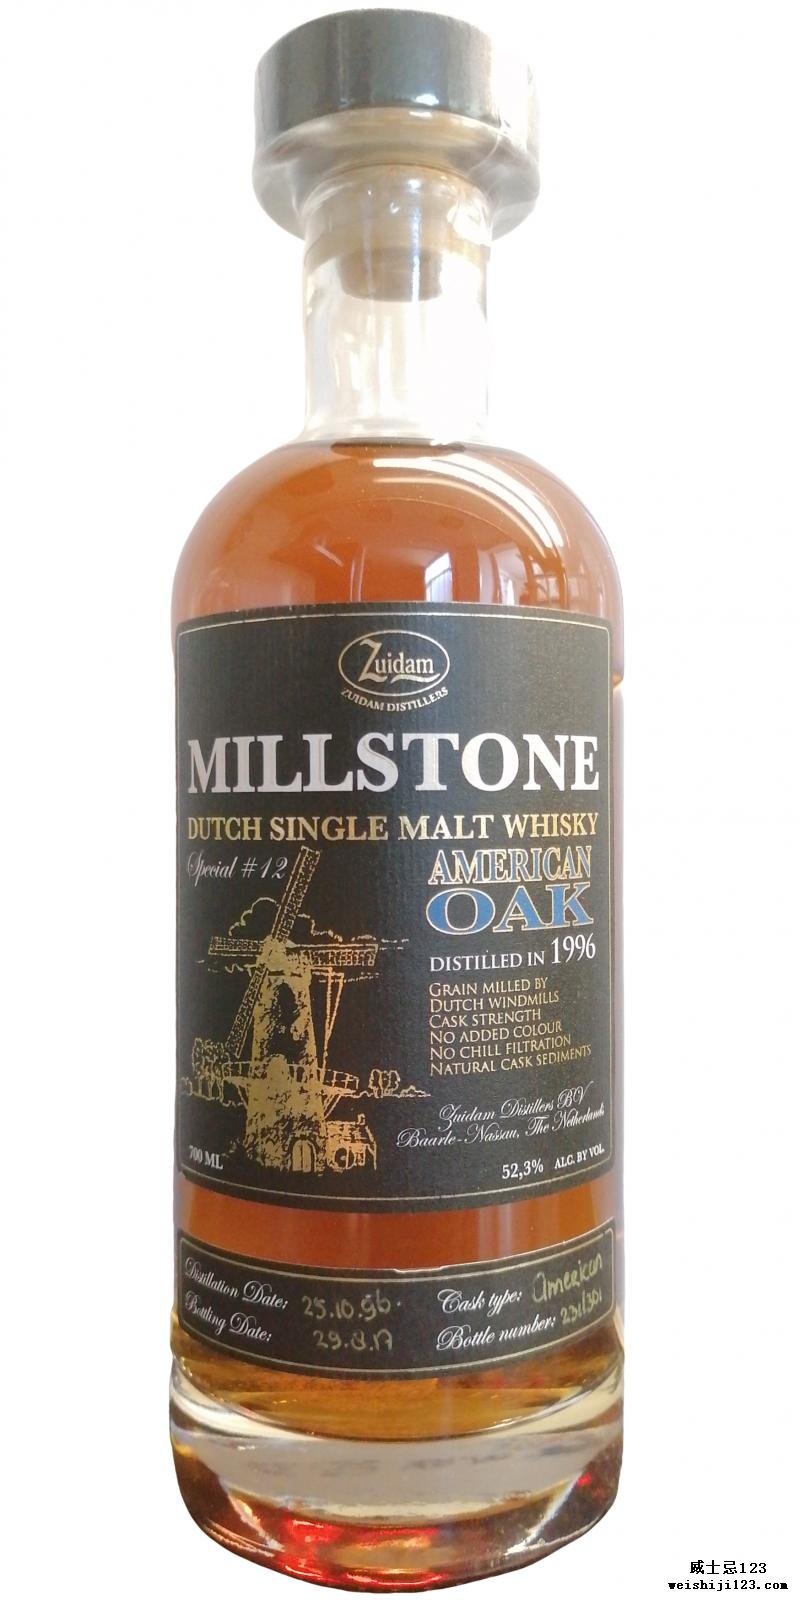 Millstone 1996 American Oak